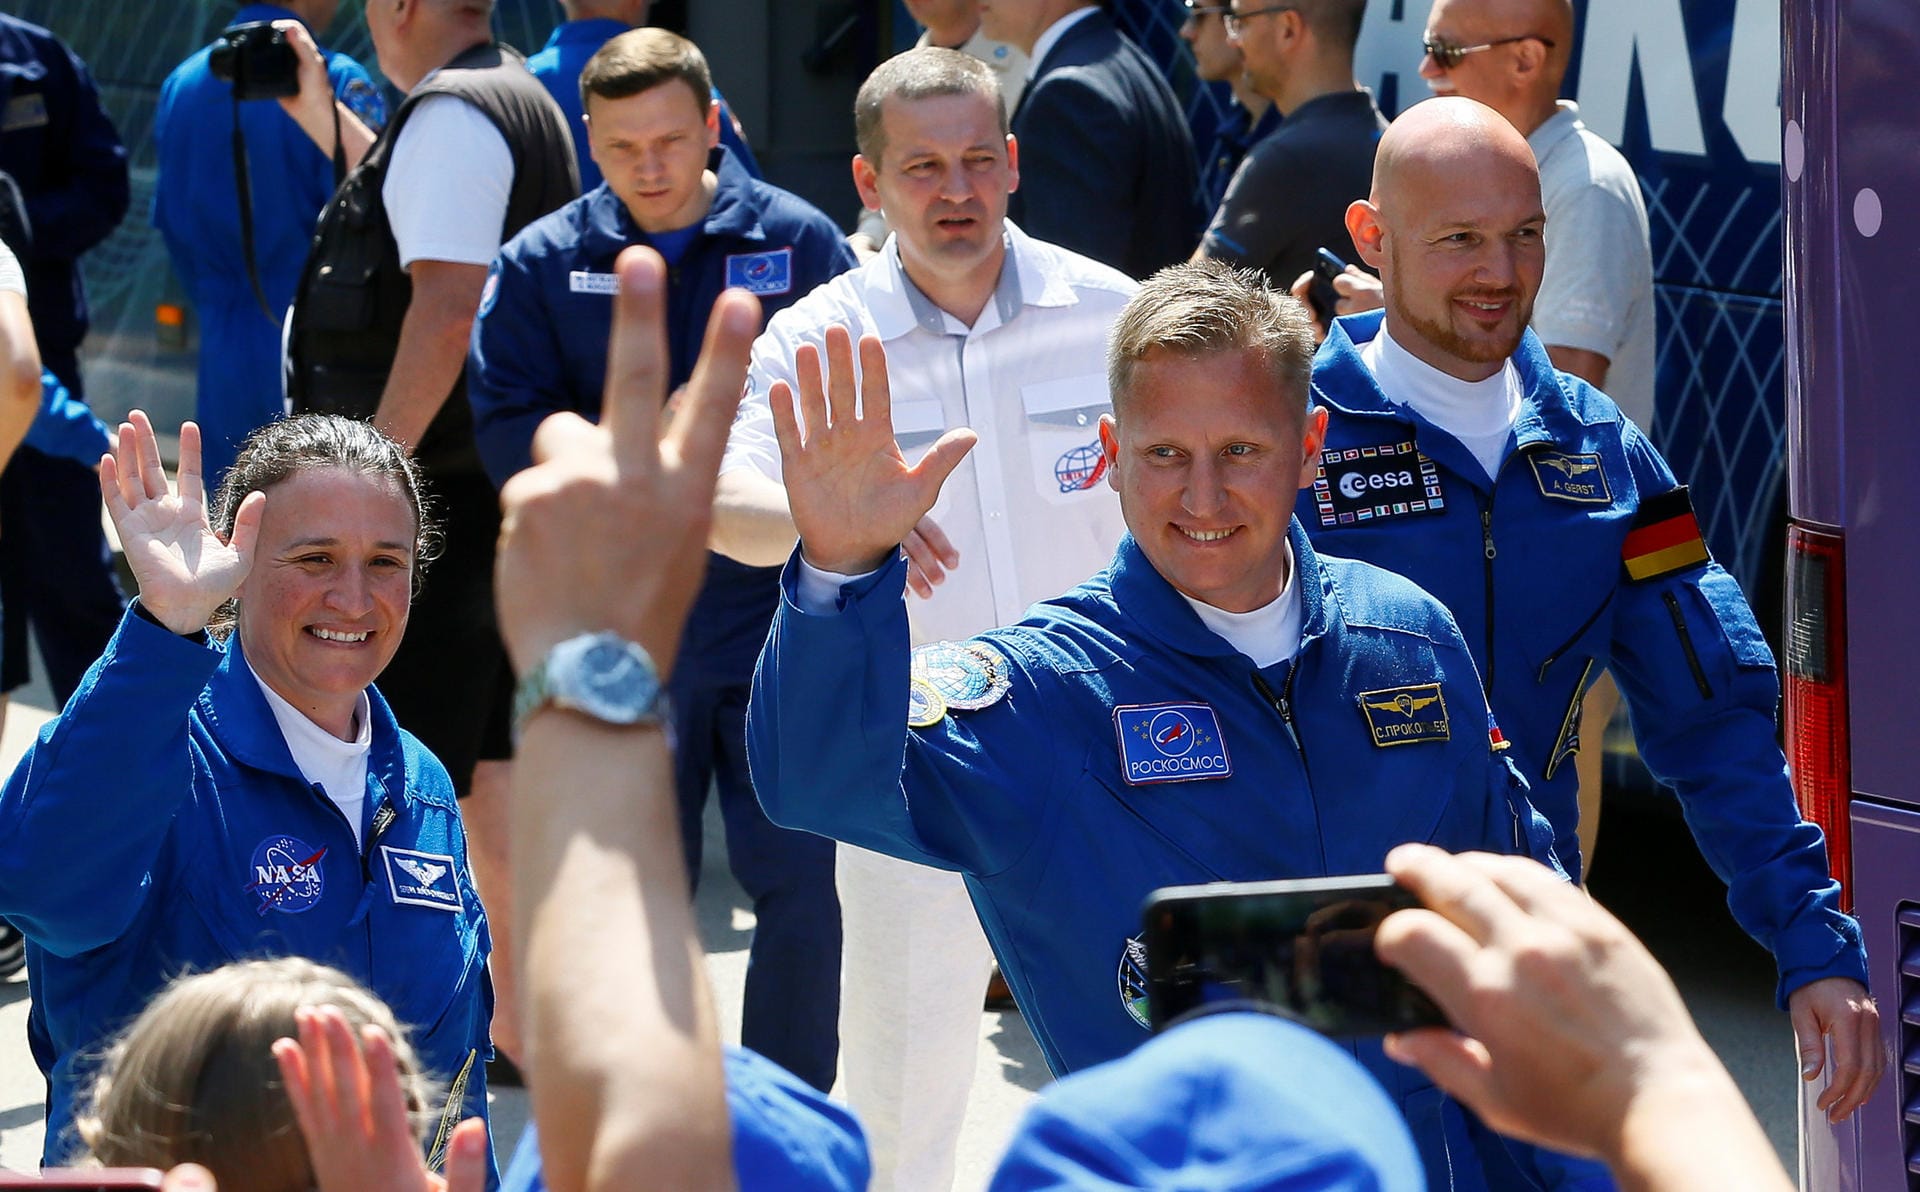 Schon am Mittwochmorgen ging es los: Die us-amerikanische Nasa-Astronautin Serena Aunon-Chancellor (von links), der russische Kosmonaut Sergej Prokopjew und der deutsche ESA-Astronaut Alexander Gerst kommen aus dem Hotel.